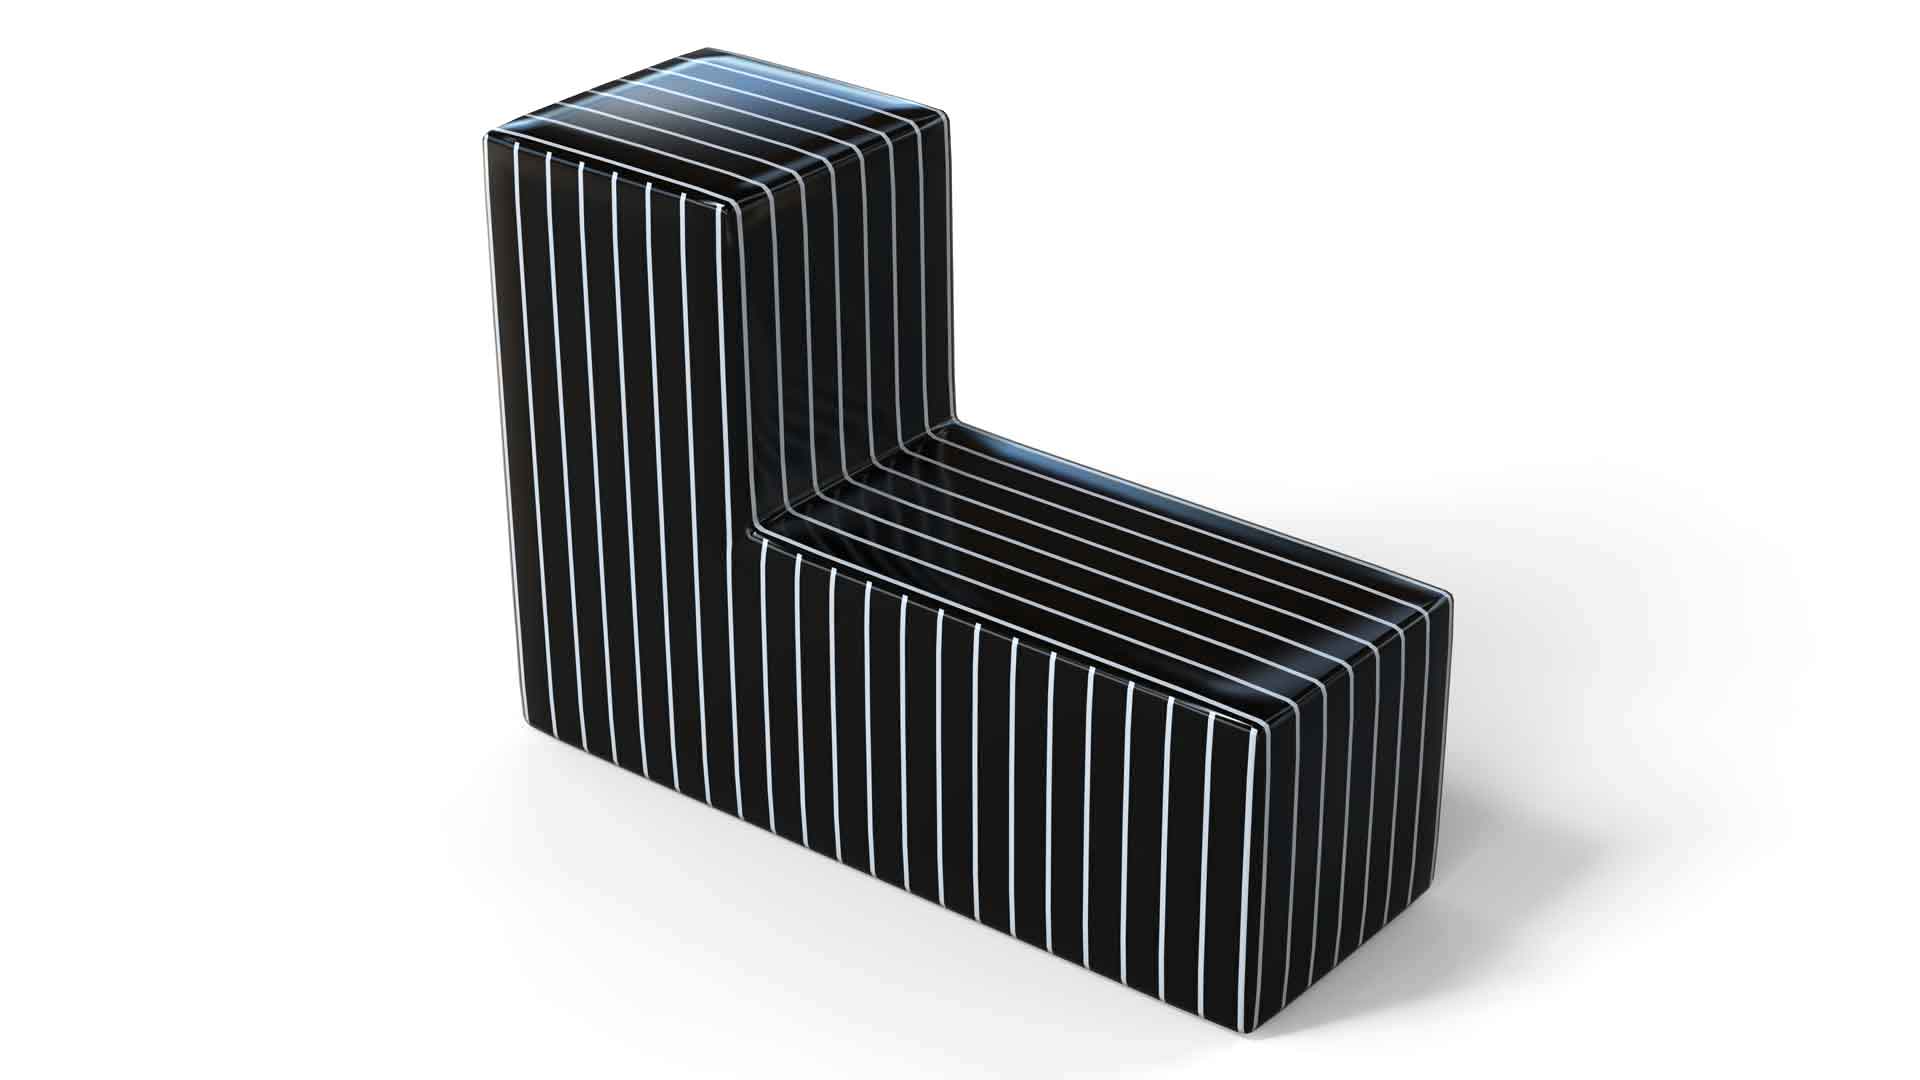 полосатая скамейка из пластика г-образной формы ганстерико